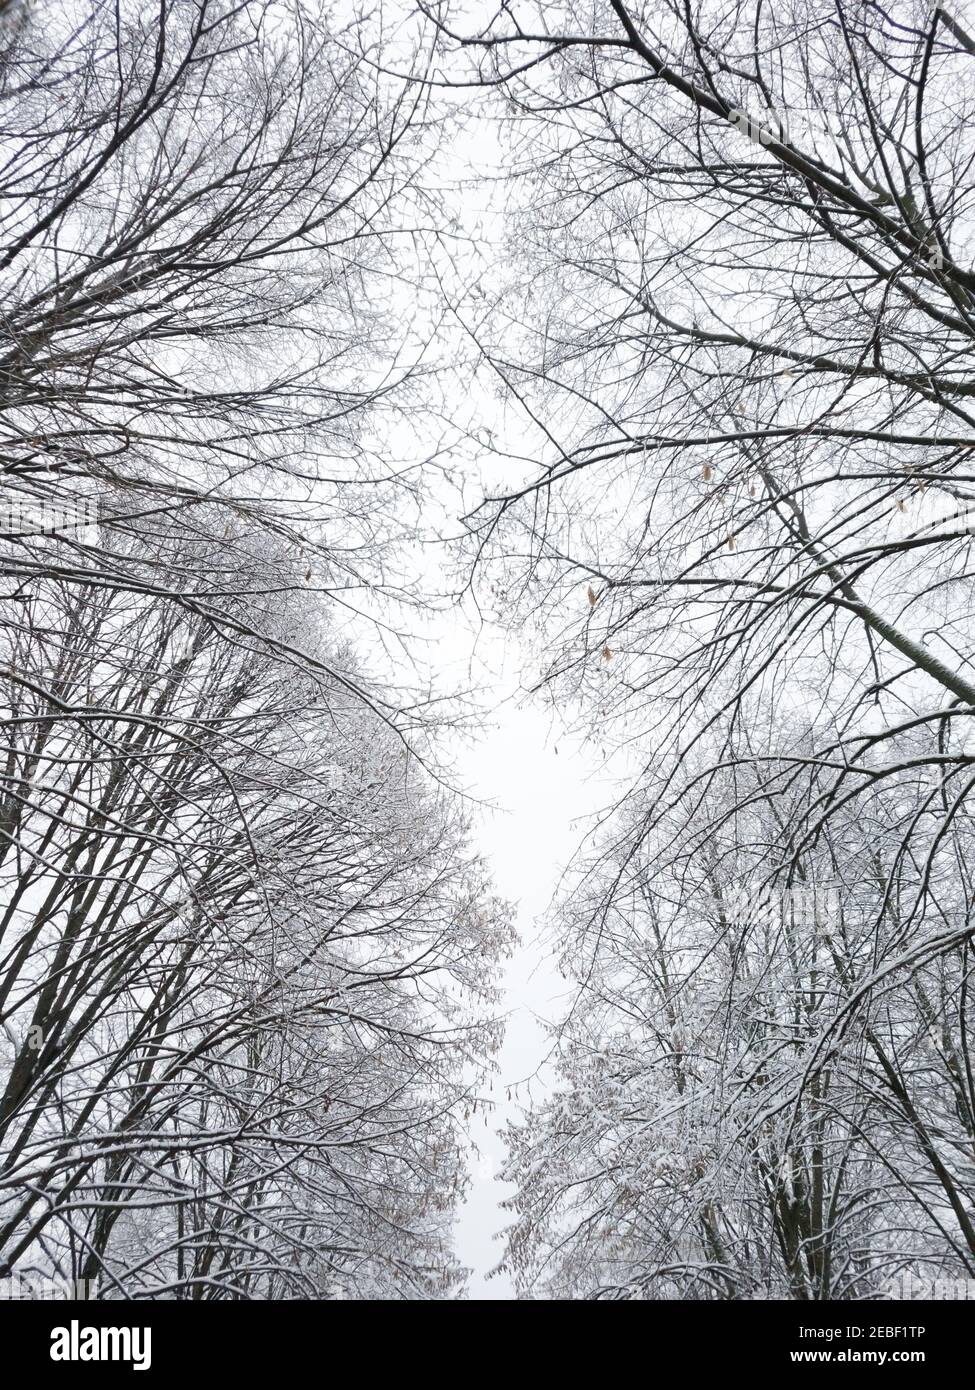 Alberi ricoperti di neve con cielo nuvoloso sullo sfondo. Inverno innevato in un parco cittadino Foto Stock